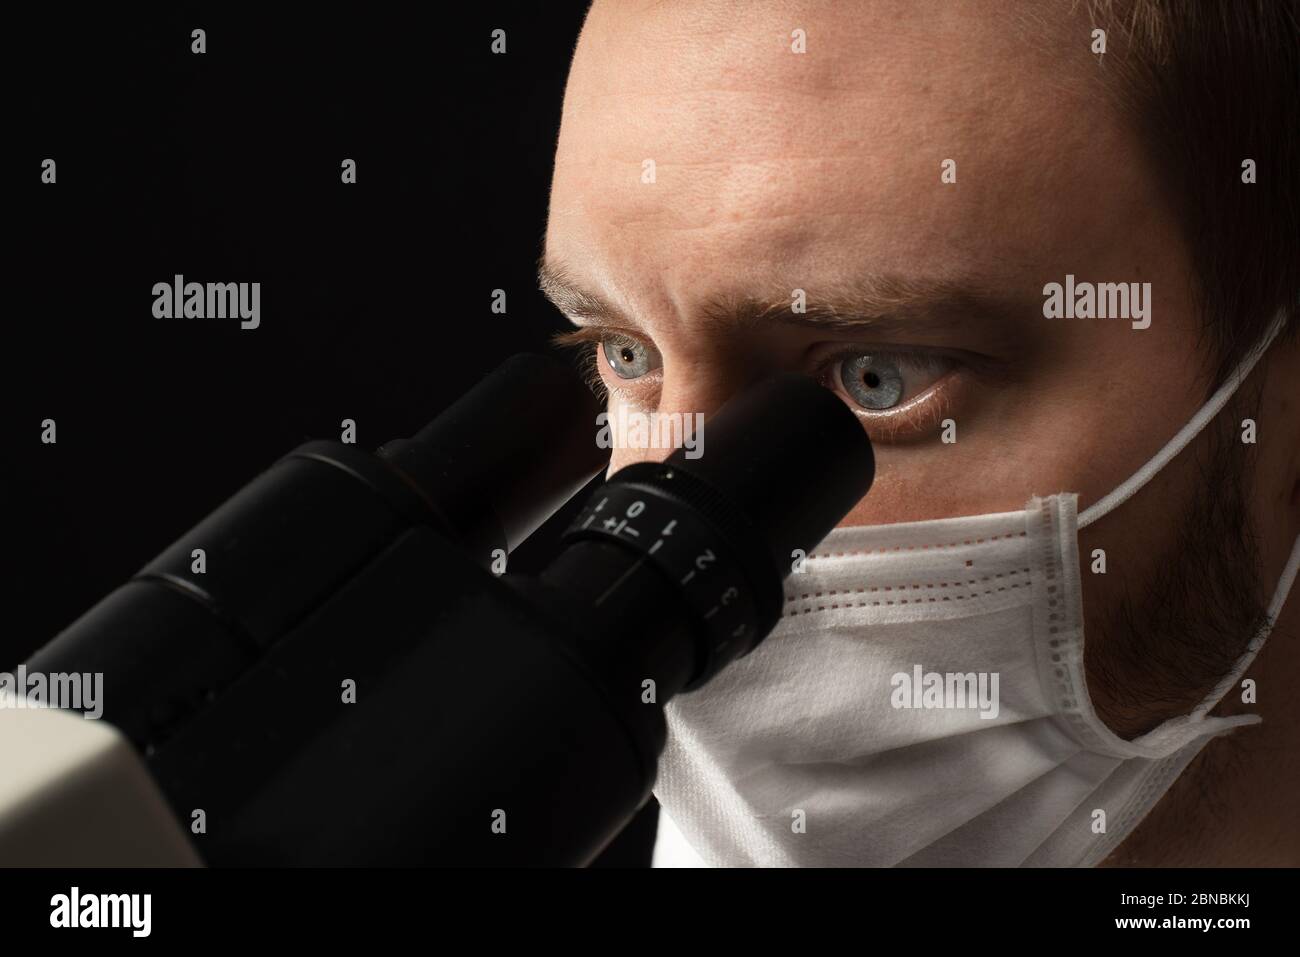 Foto de cerca de un científico masculino blanco usando un microscopio binocular y usando una máscara facial. Foto de stock